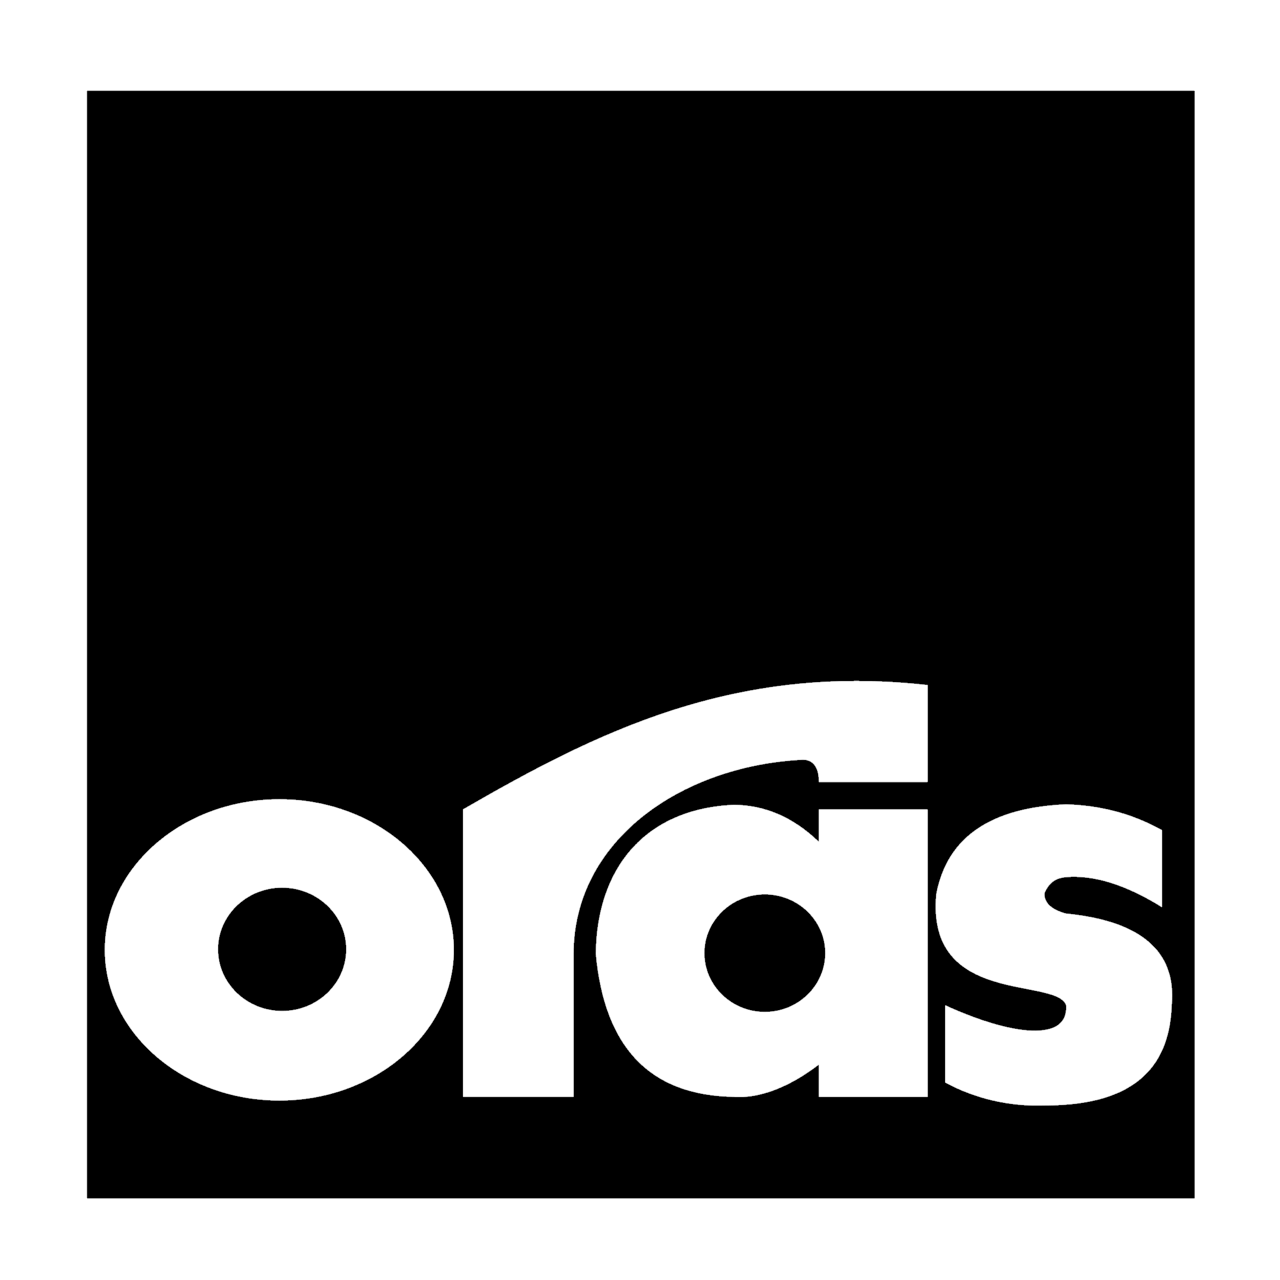 The Oras logo.